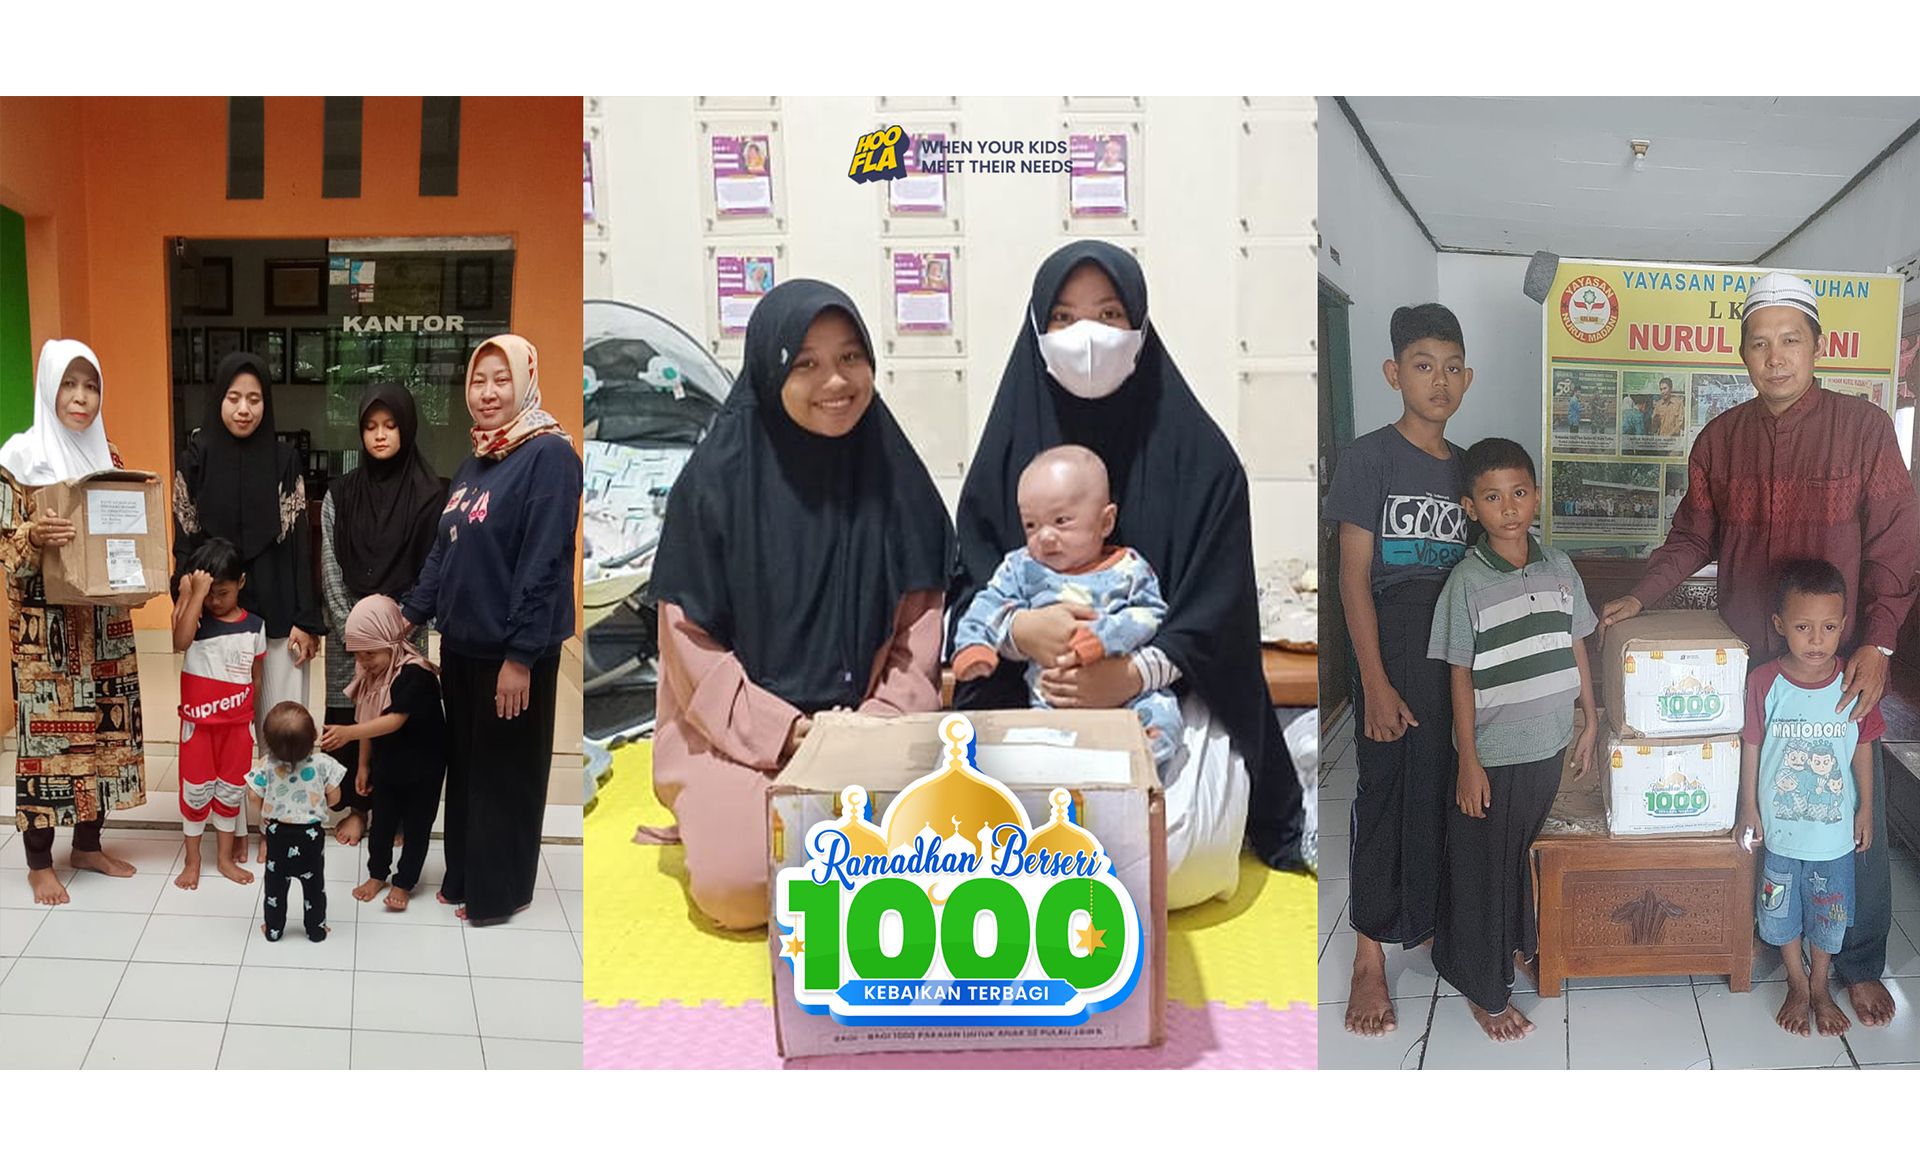 Hooflakids, Brand Baju Anak Asal Bandung, Bahagiakan Ribuan Anak di Bulan Ramadhan